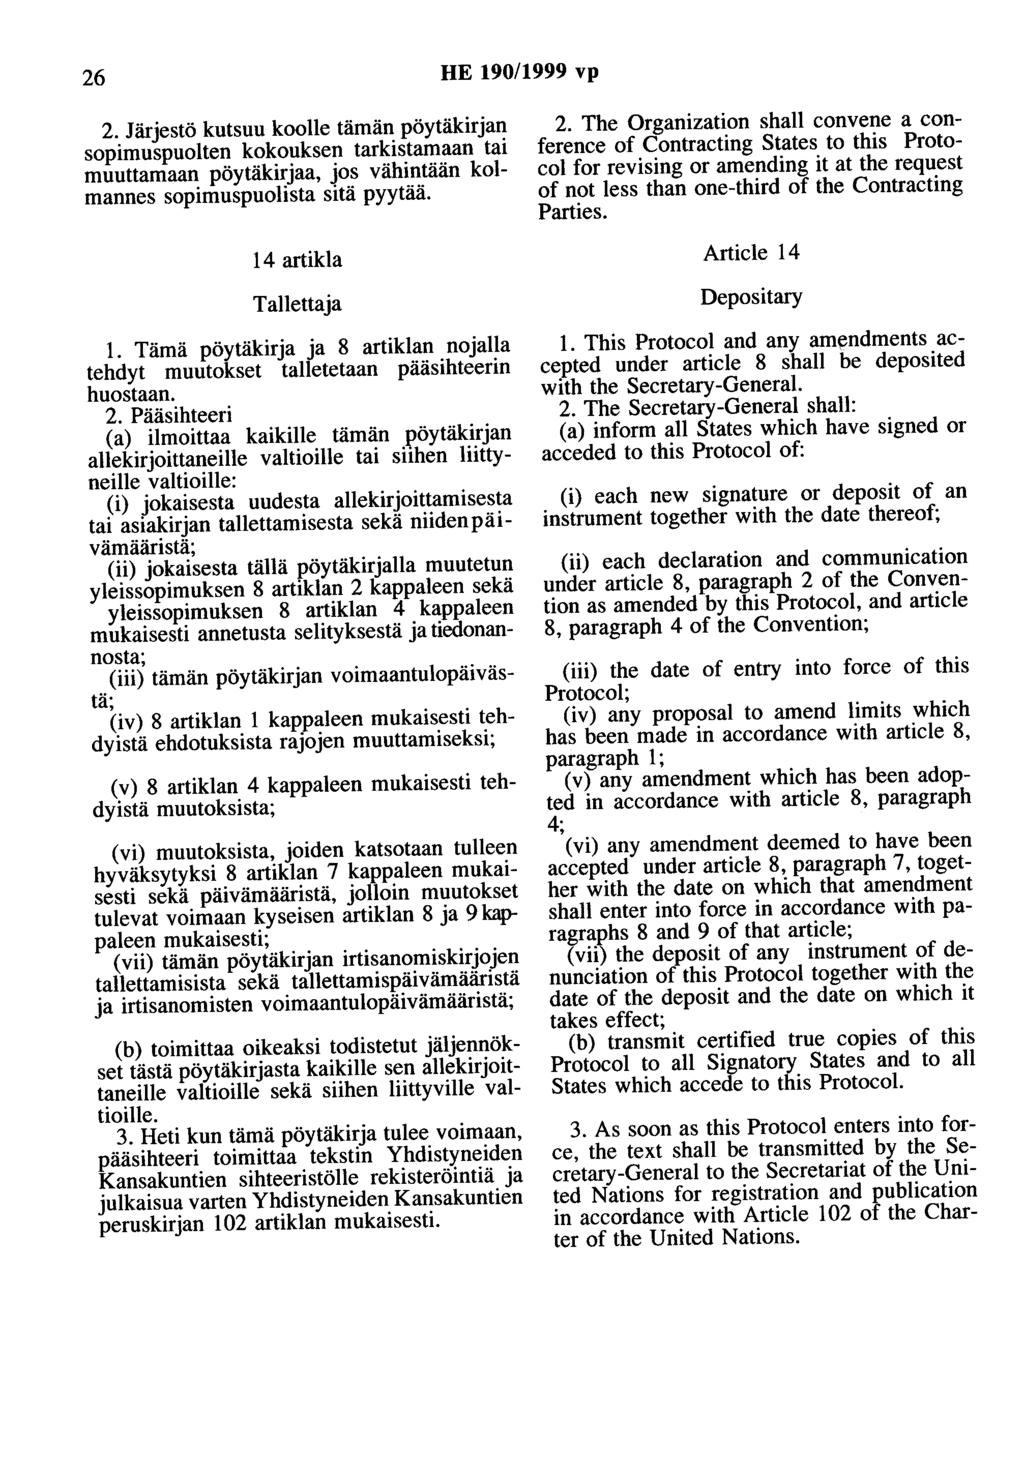 26 HE 190/1999 vp 2. Järjestö kutsuu koolle tämän pöytäkirjan sopimuspuolten kokouksen tarkistamaan tai muuttamaan pöytäkirjaa, jos vähintään kolmannes sopimuspuolista sitä pyytää.